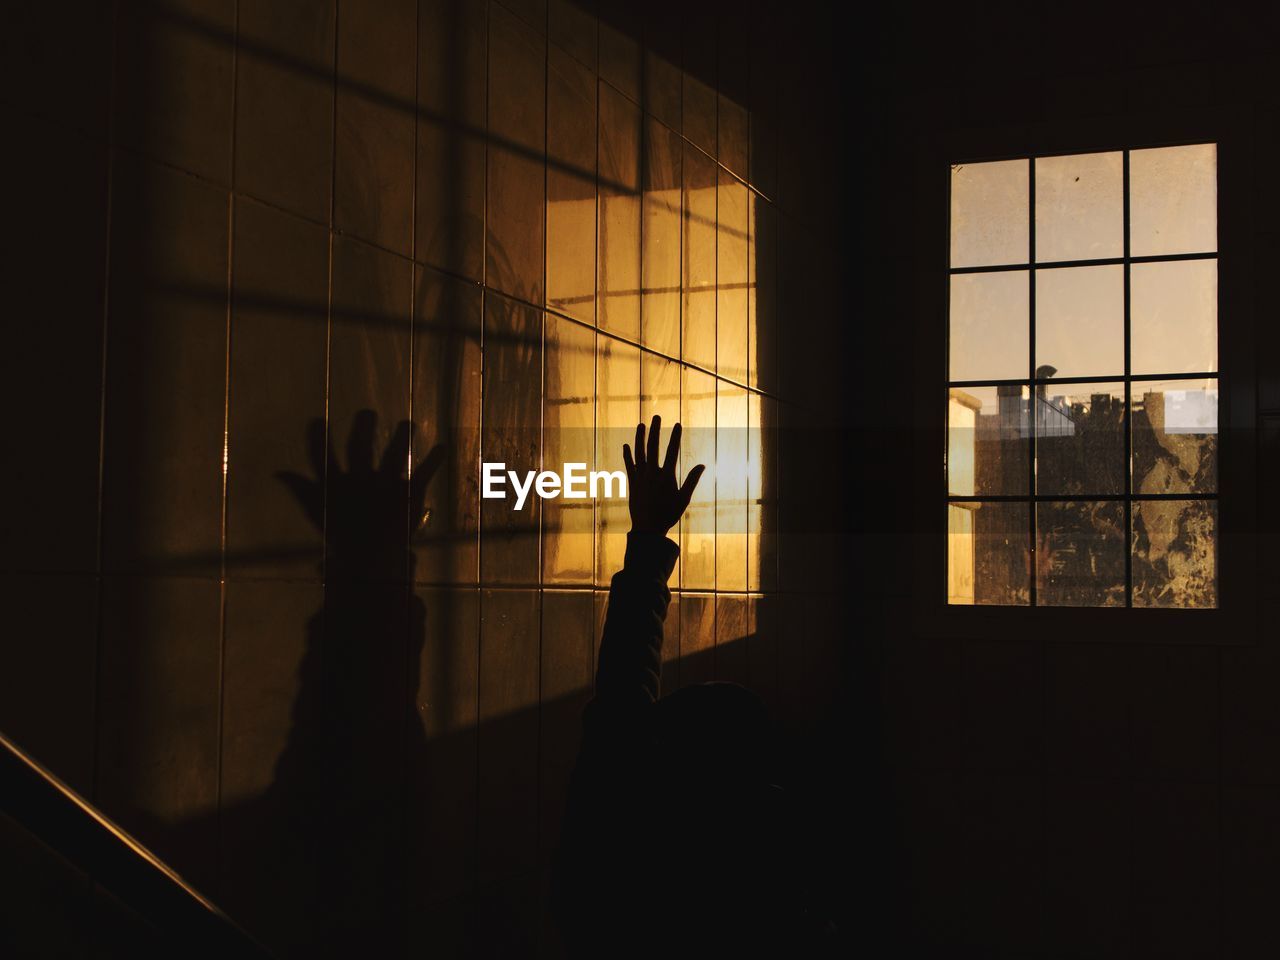 Silhouette people standing by window in dark room